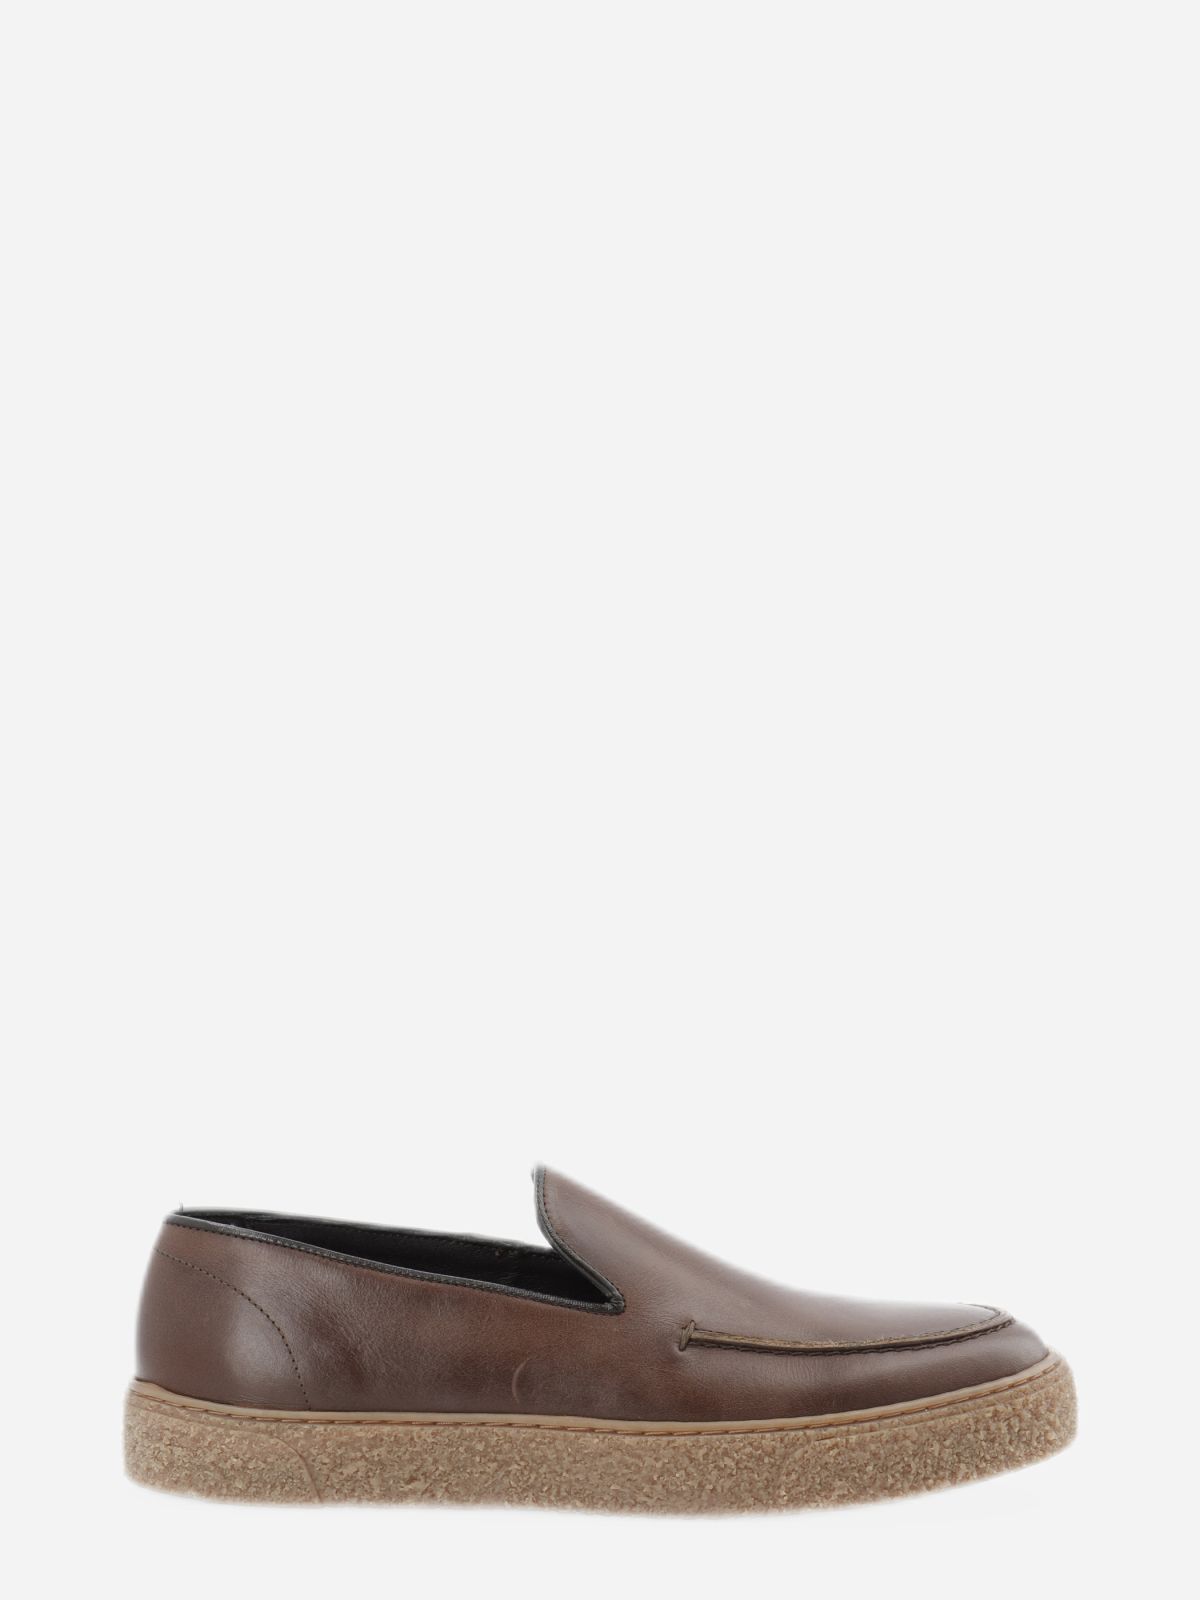  נעלי עור אלגנטיות סליפ און / גברים של BIANCO